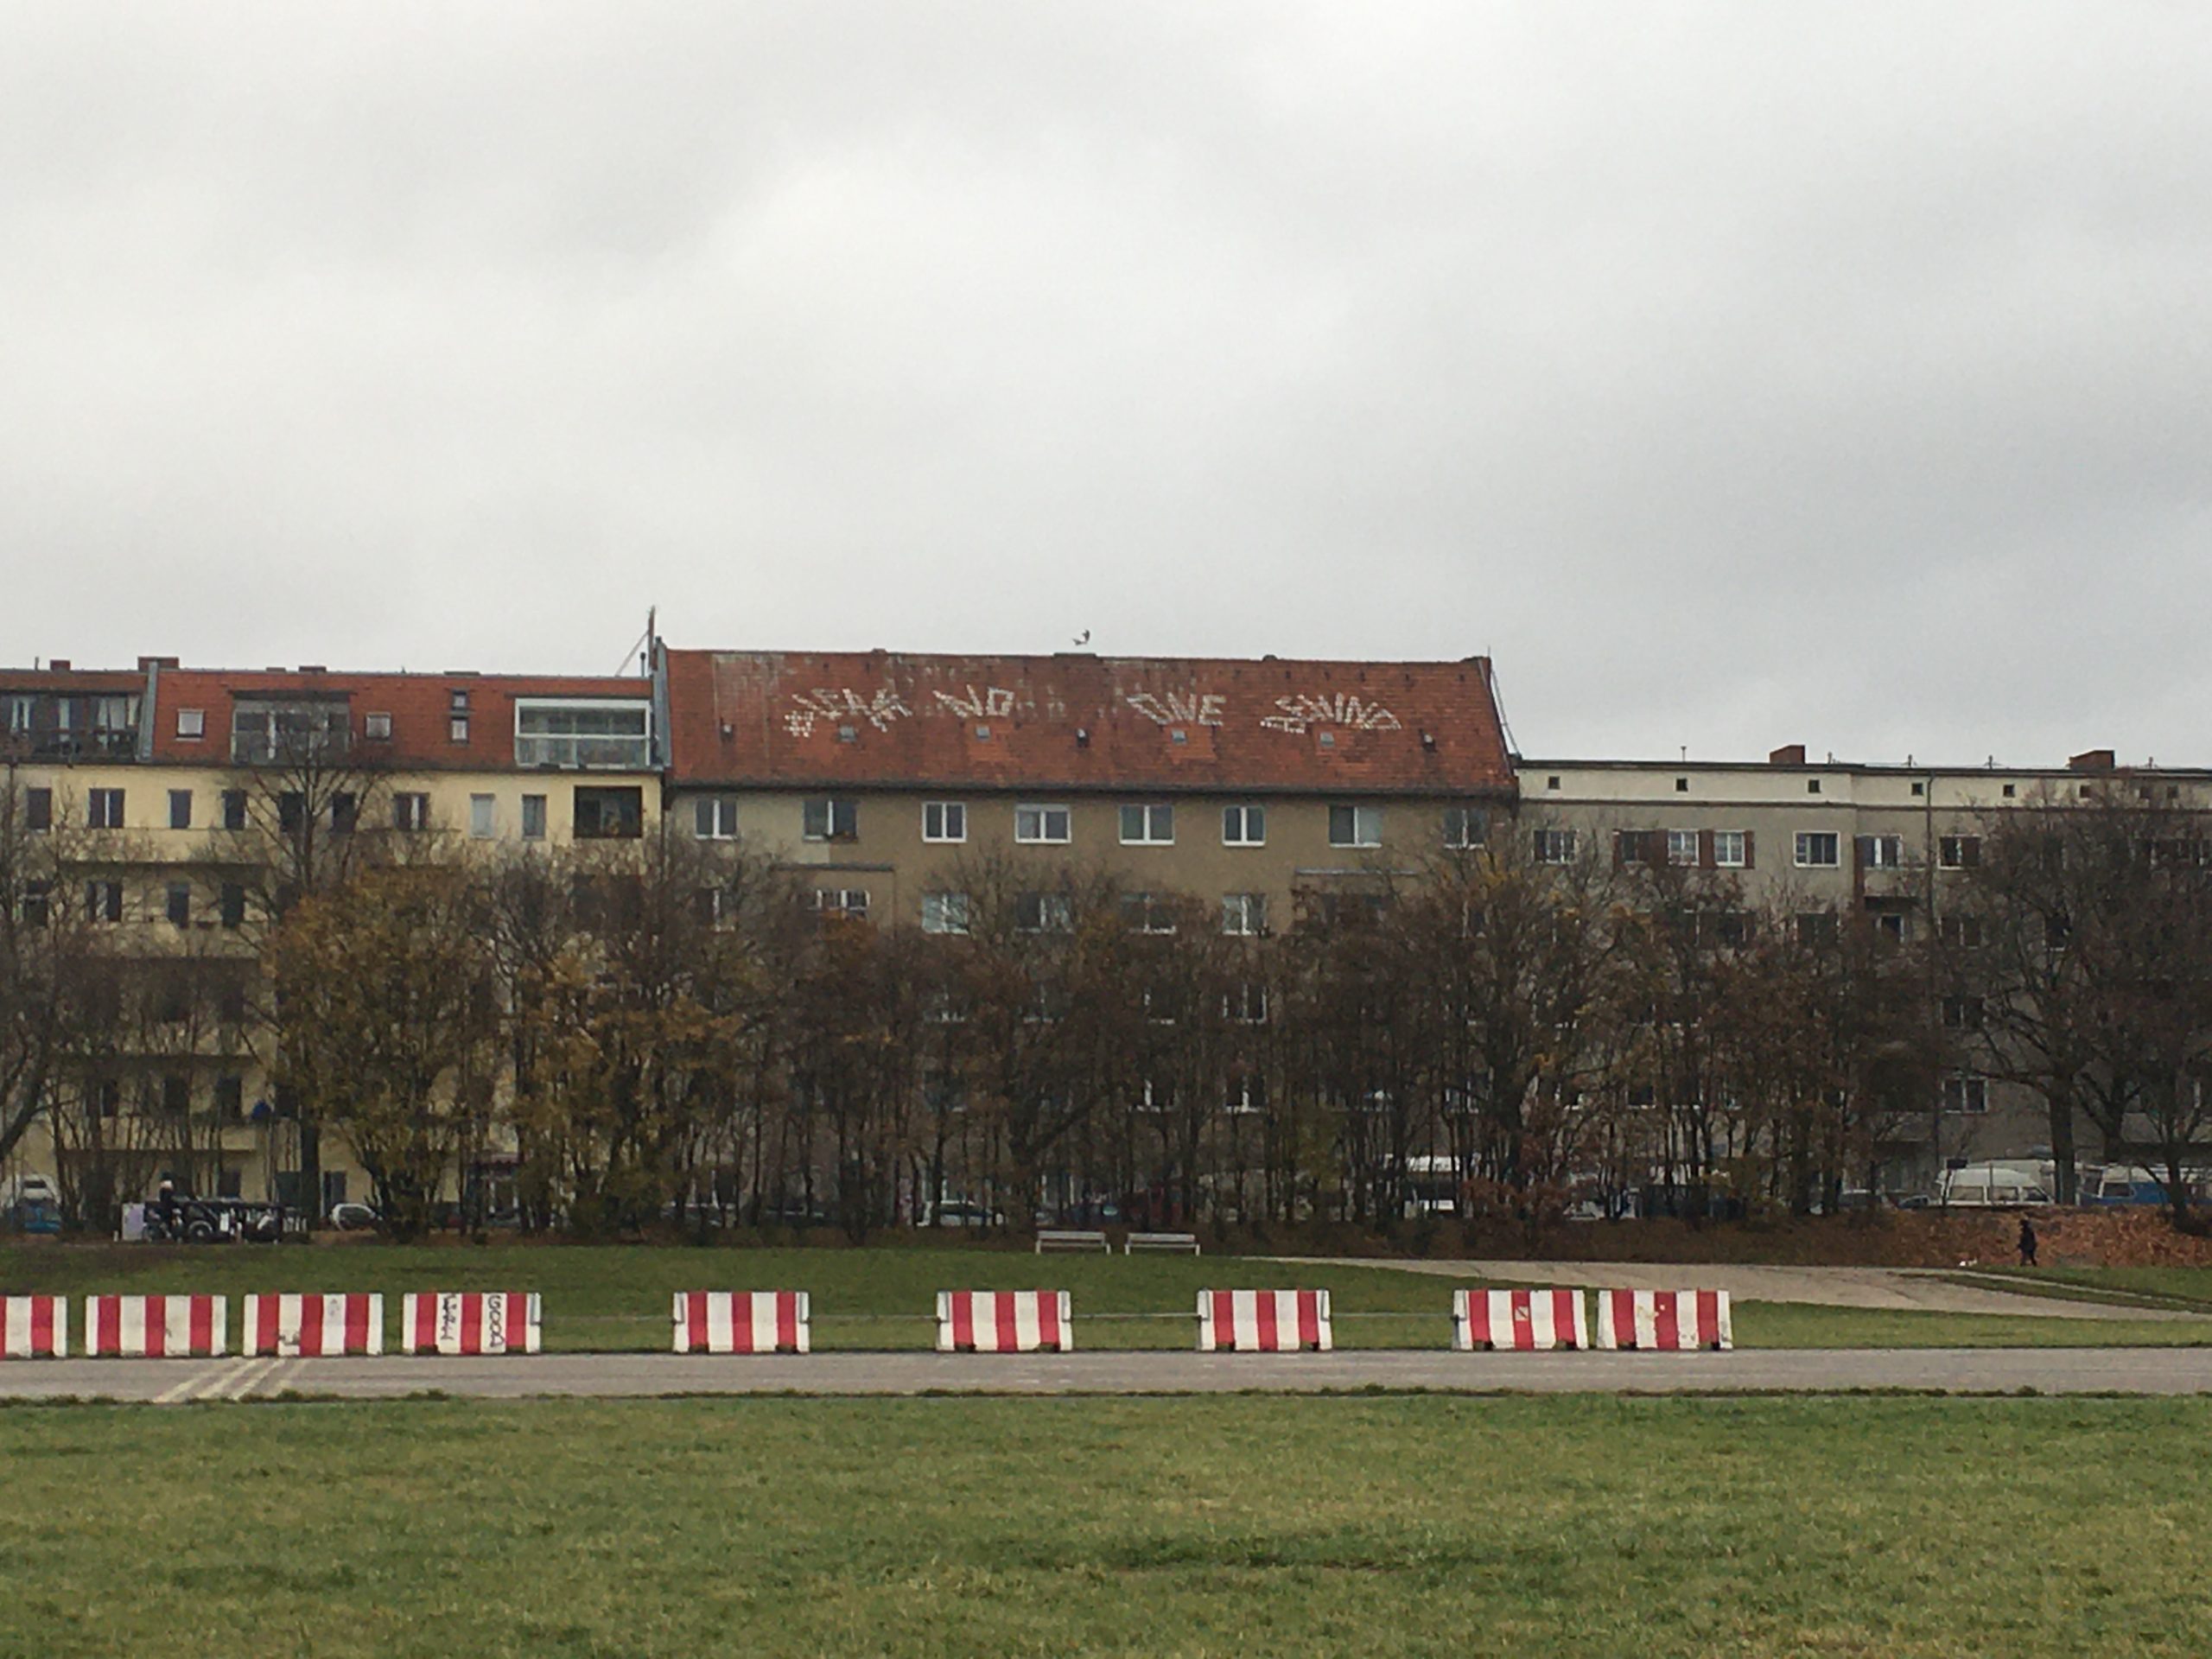 12 besondere Dächer in Berlin: Dieses Dach am Tempelhofer Feld schickt eine wichtige Message in die Welt